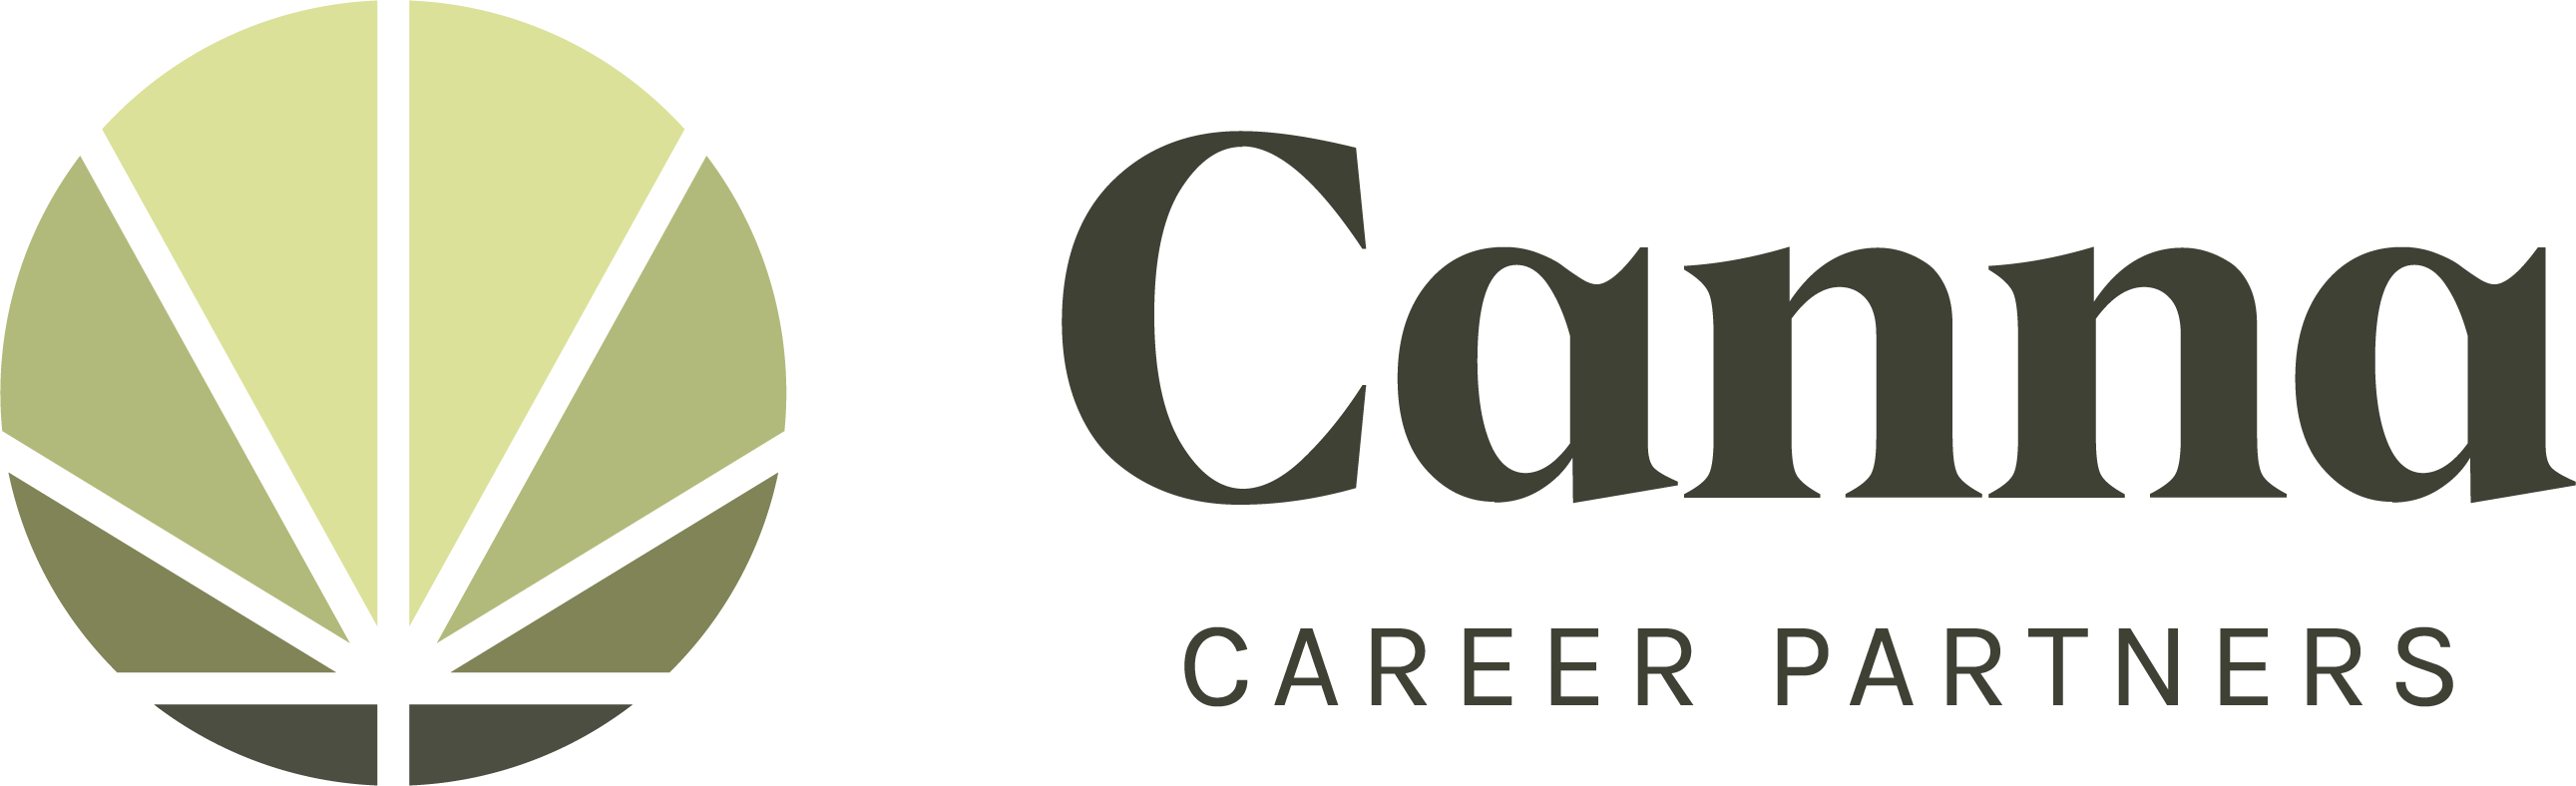 Canna Career Partners